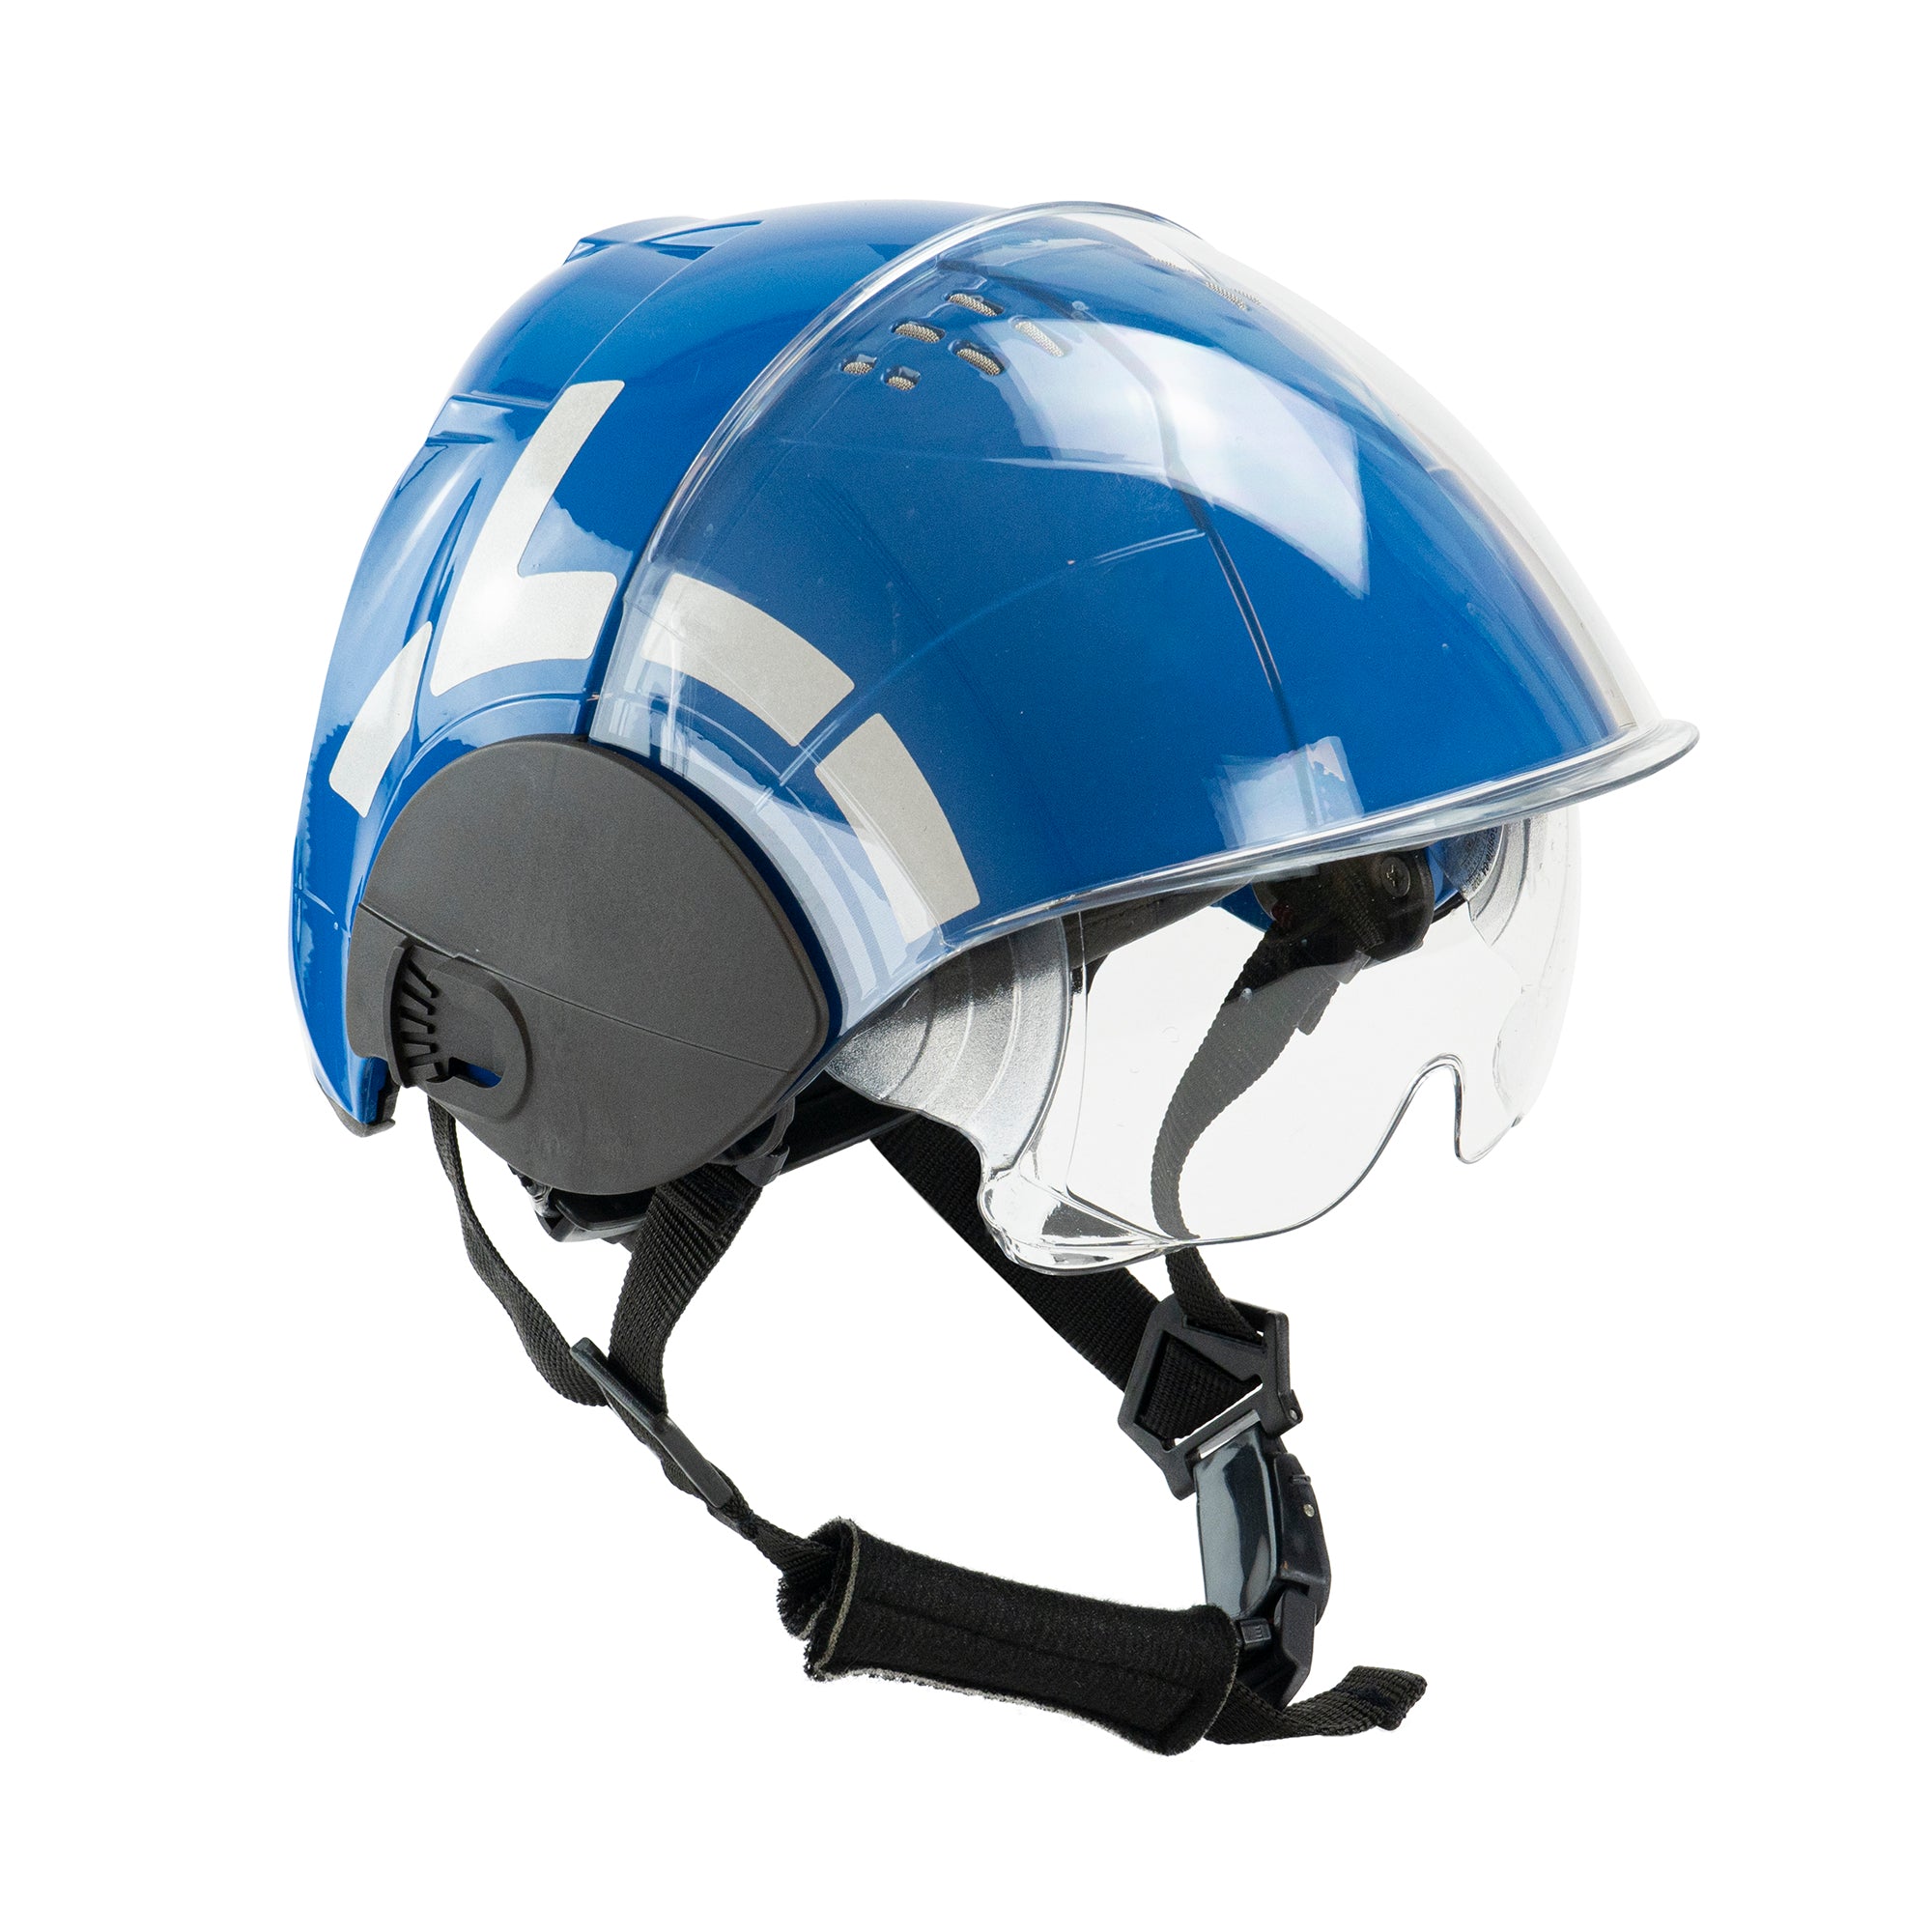 International rescue – Technical WRS helmet - WRS